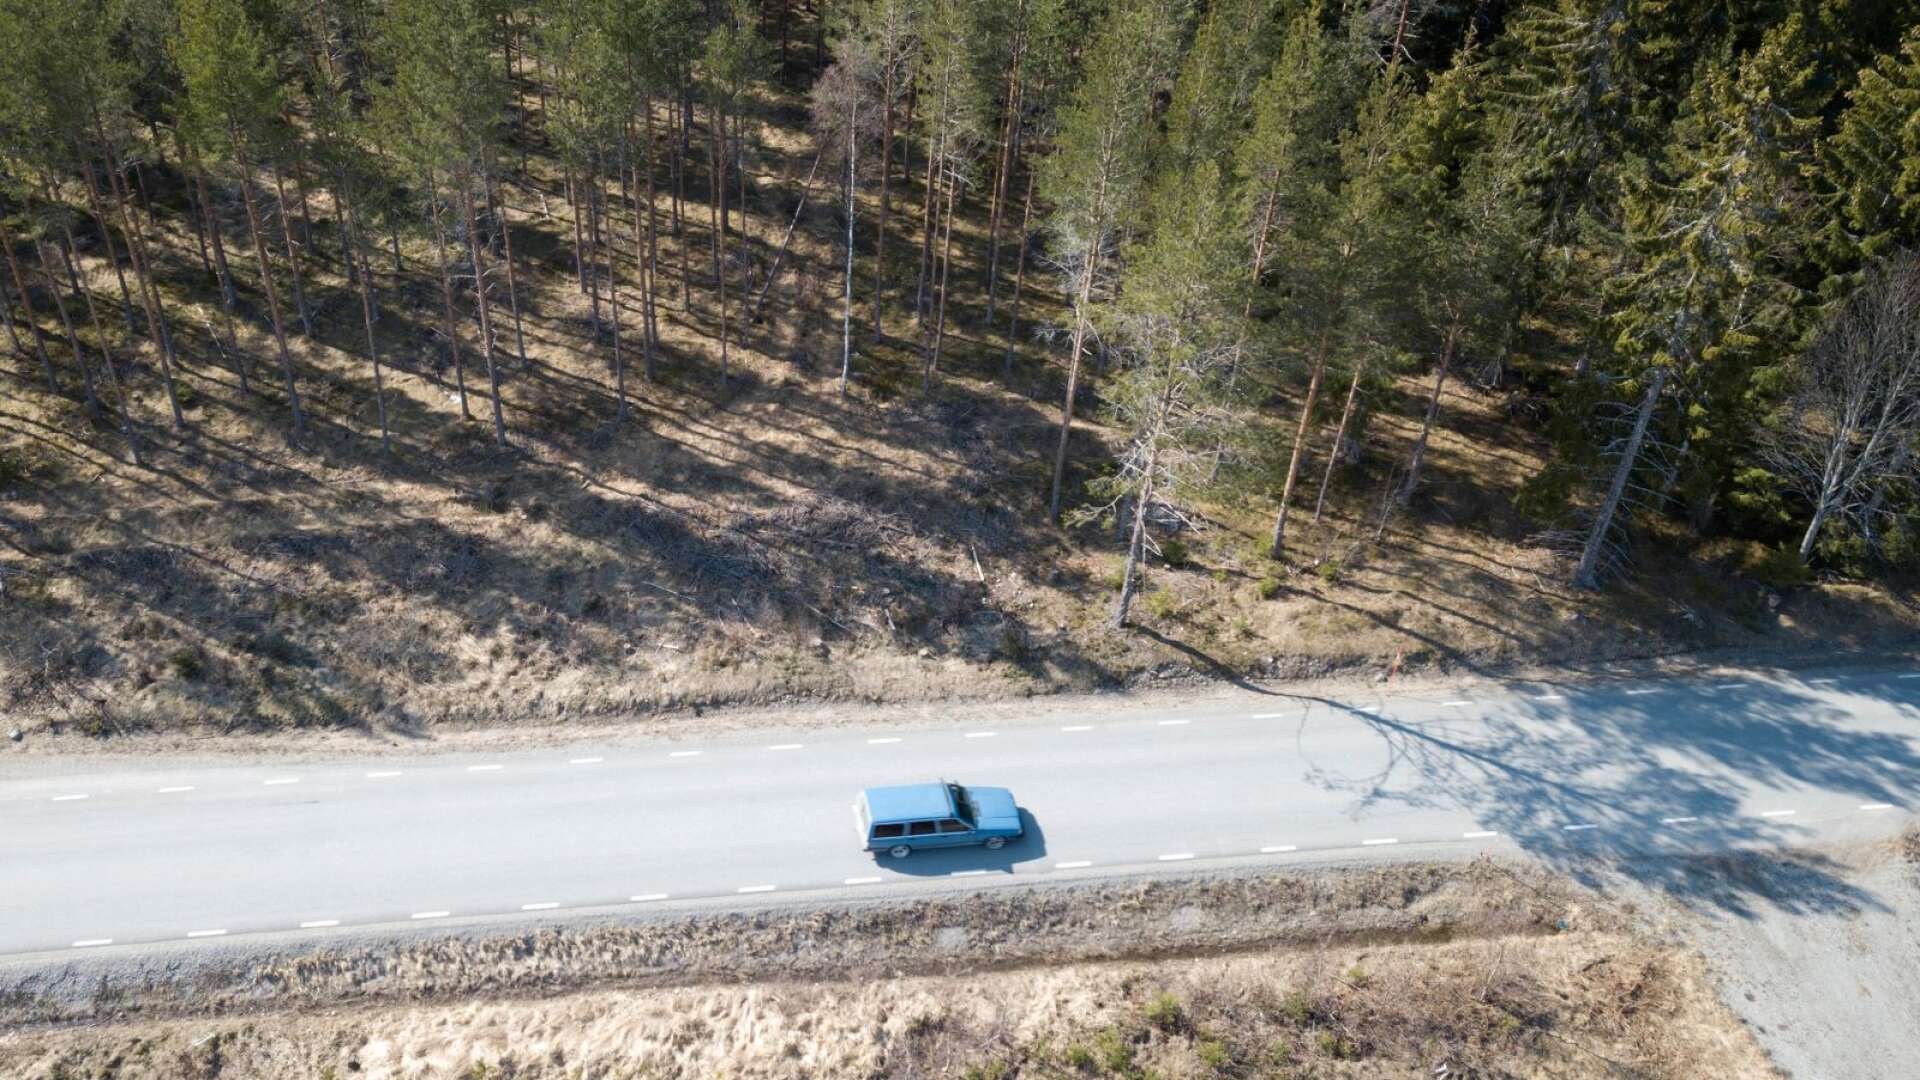 På landsbygden är bilen för många den enda rimliga möjligheten att ta sig till arbete och service, skriver Gösta Frödin.